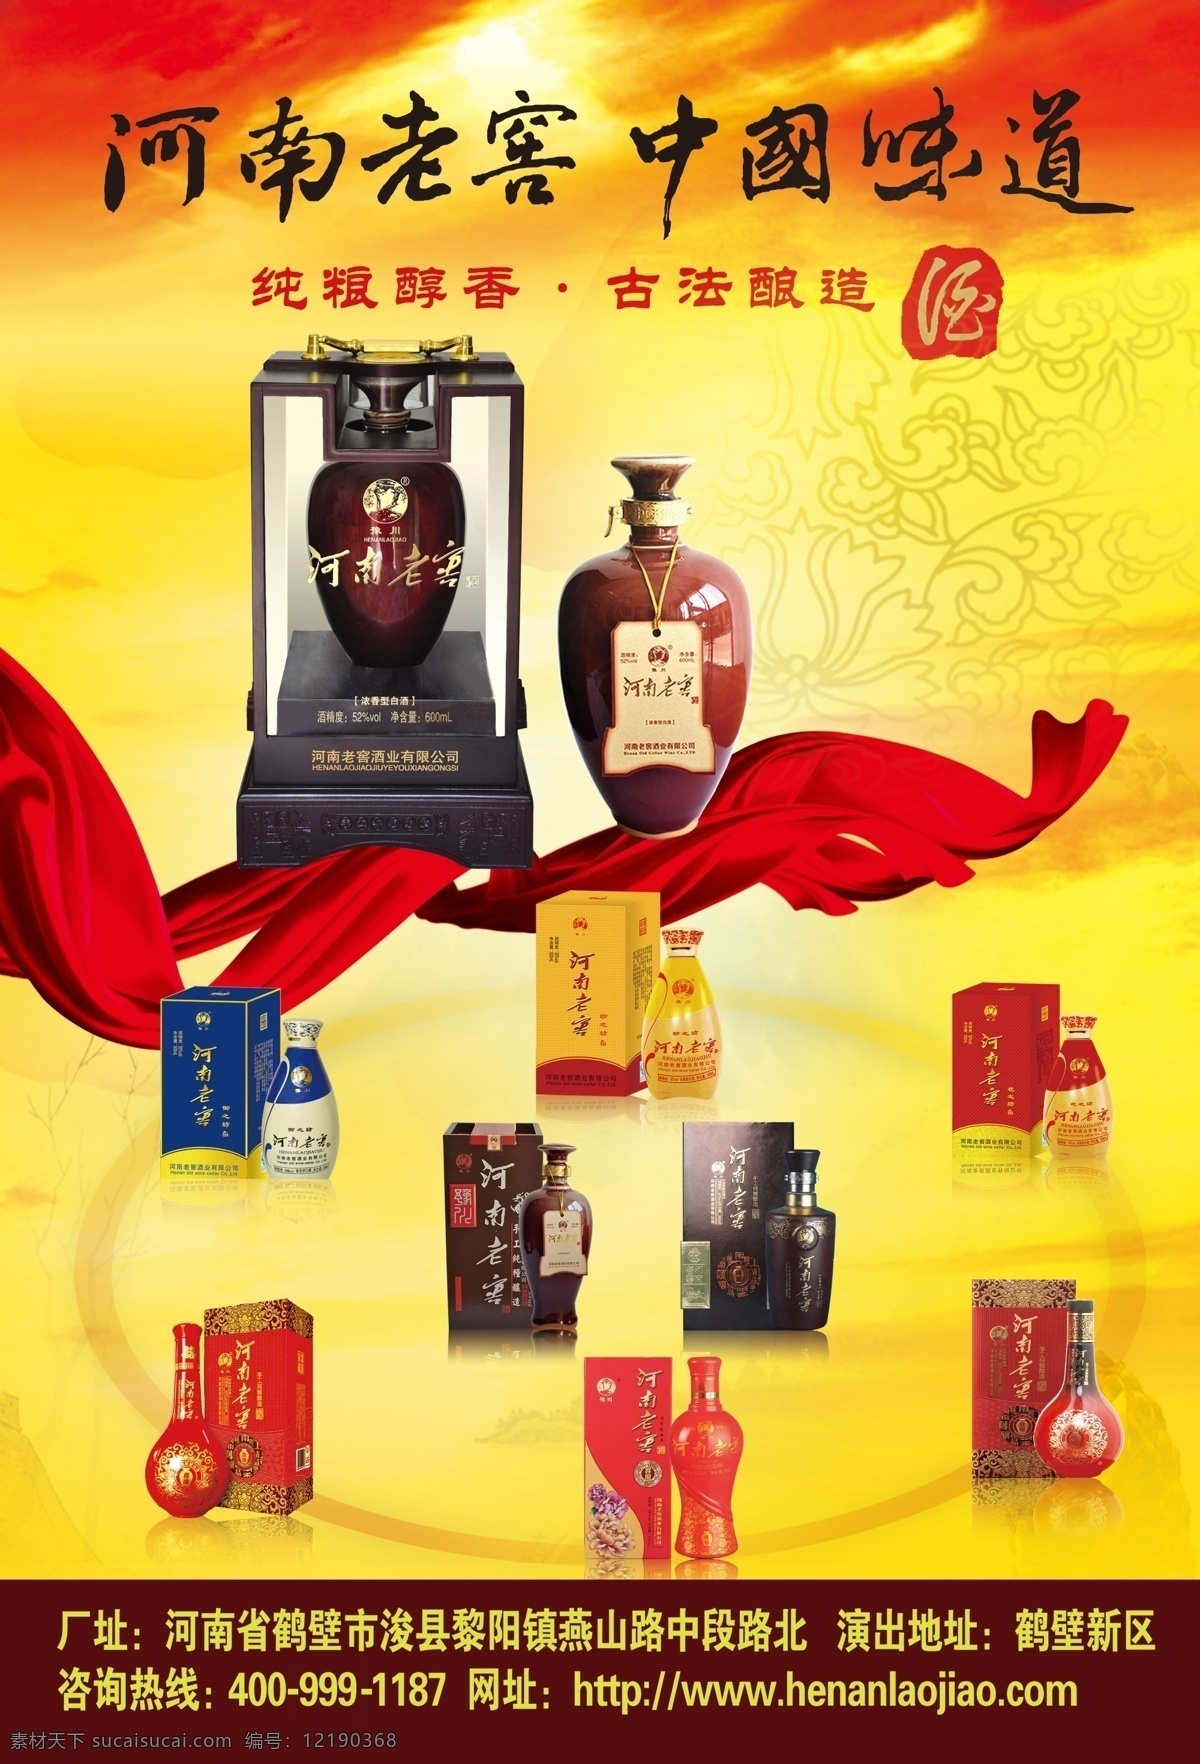 酒类宣传 酒 飘带 河南老窖 中国味道 广告设计模板 源文件